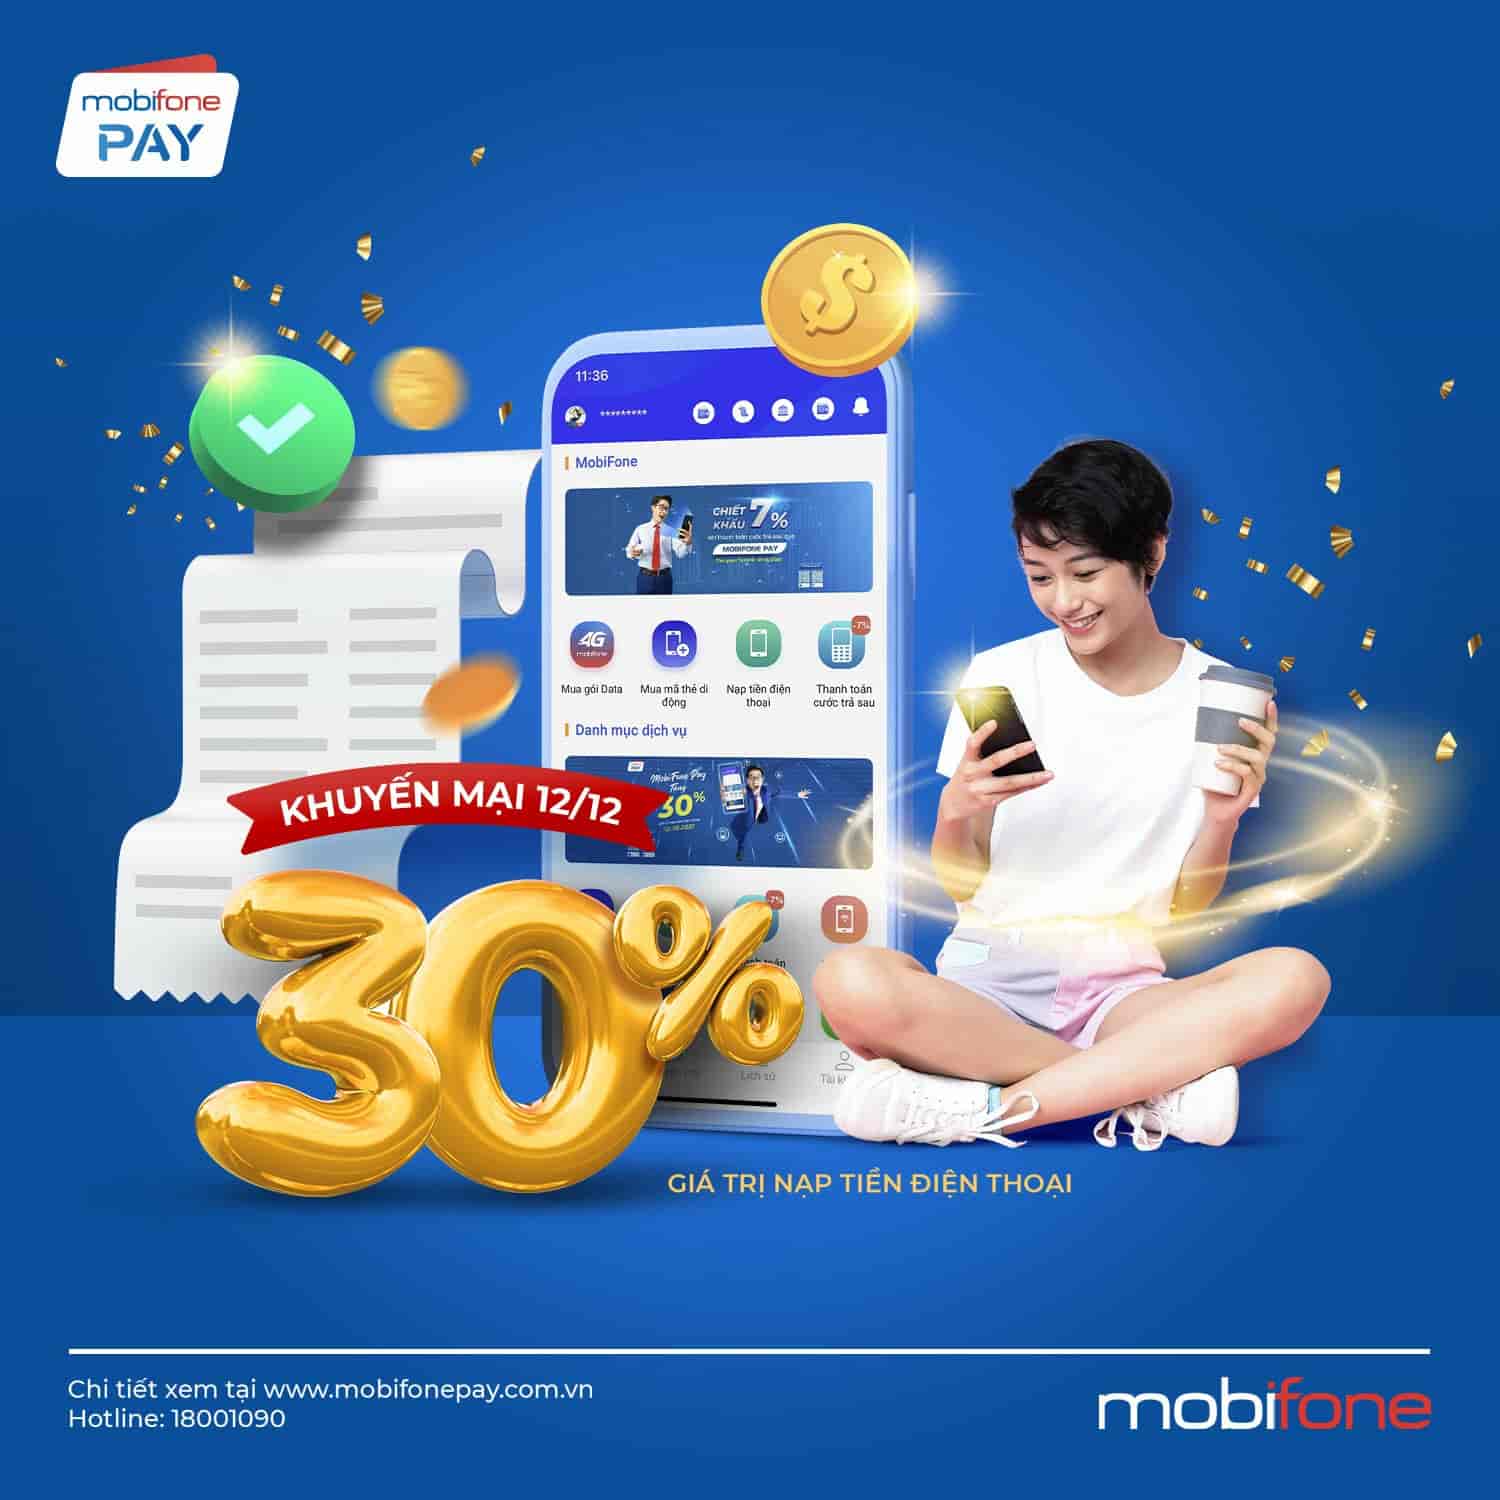 Khuyến mại khủng tháng 12/2021 trên ví điện tử MobiFone Pay: Tặng 30% giá trị nạp tiền điện thoại, cộng 10GB data khi đăng ký mới.